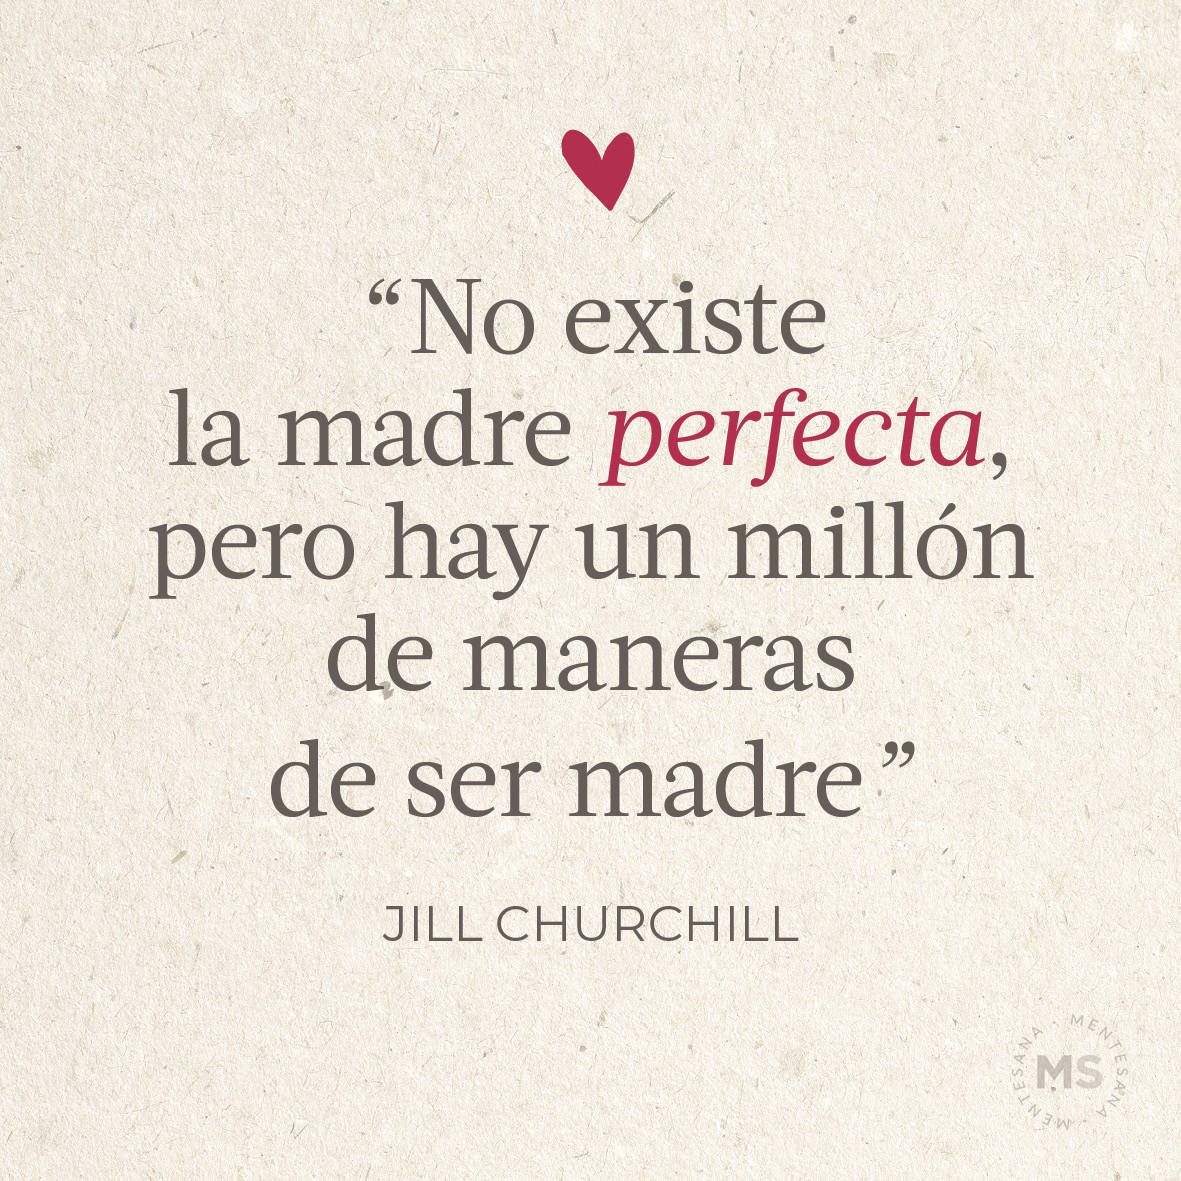 "No existe la madre perfecta, pero hay un millón de maneras de ser buena madre.” Jill Churchill